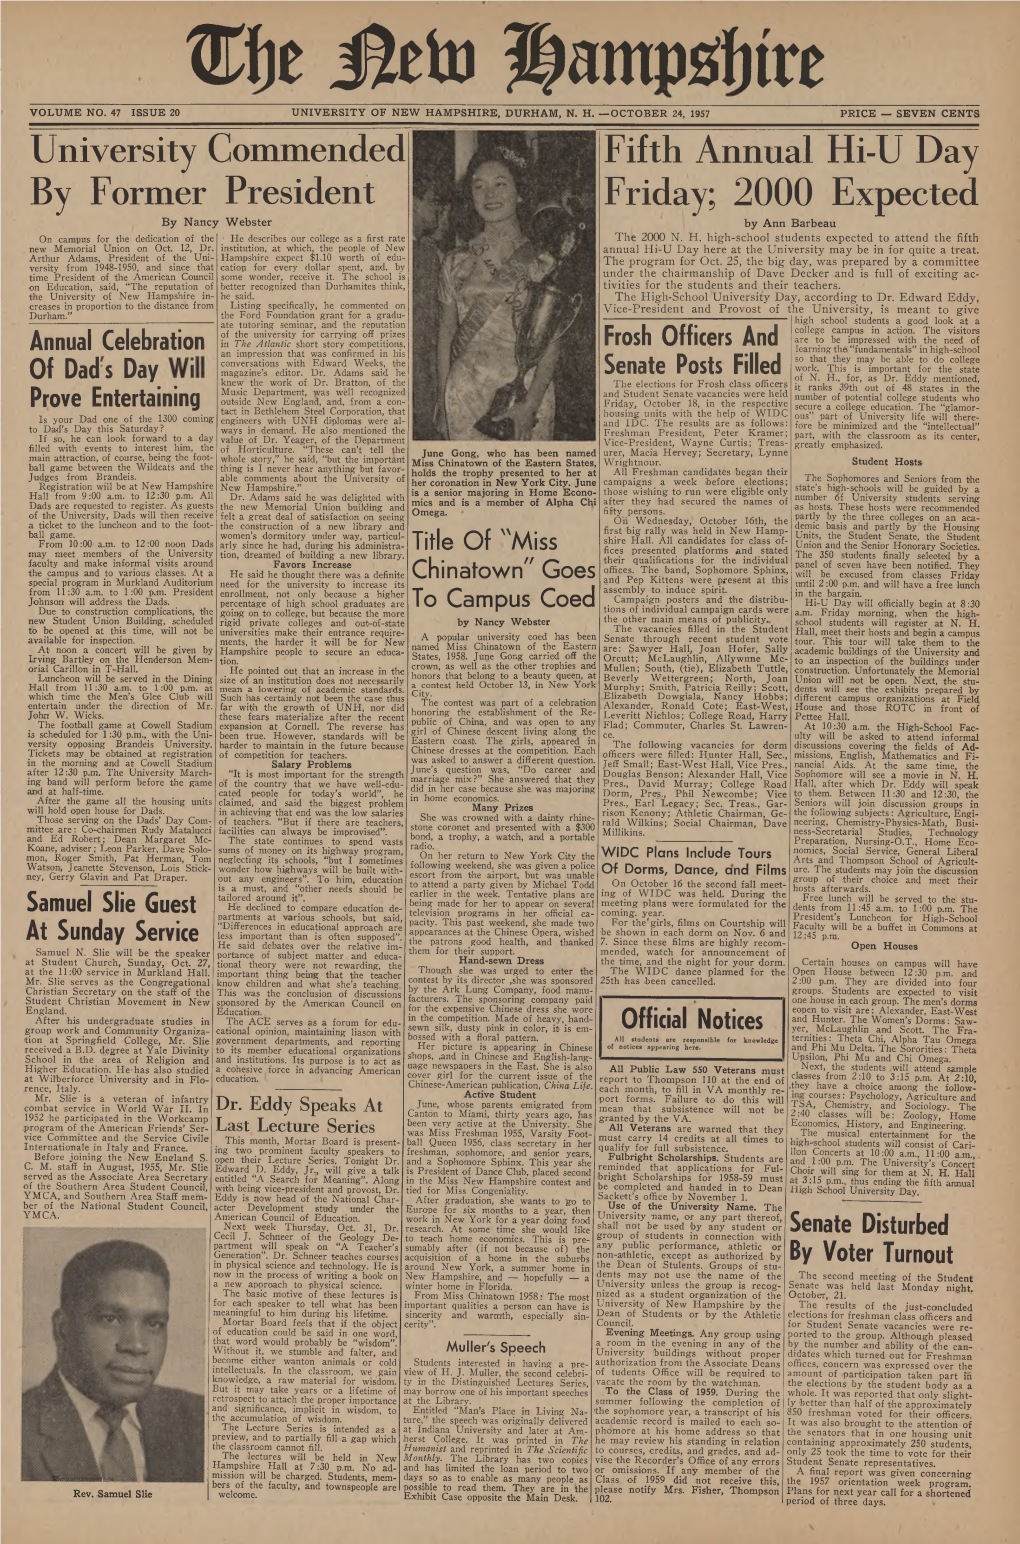 The New Hampshire, Vol. 47, No. 20 (Oct. 24, 1957)